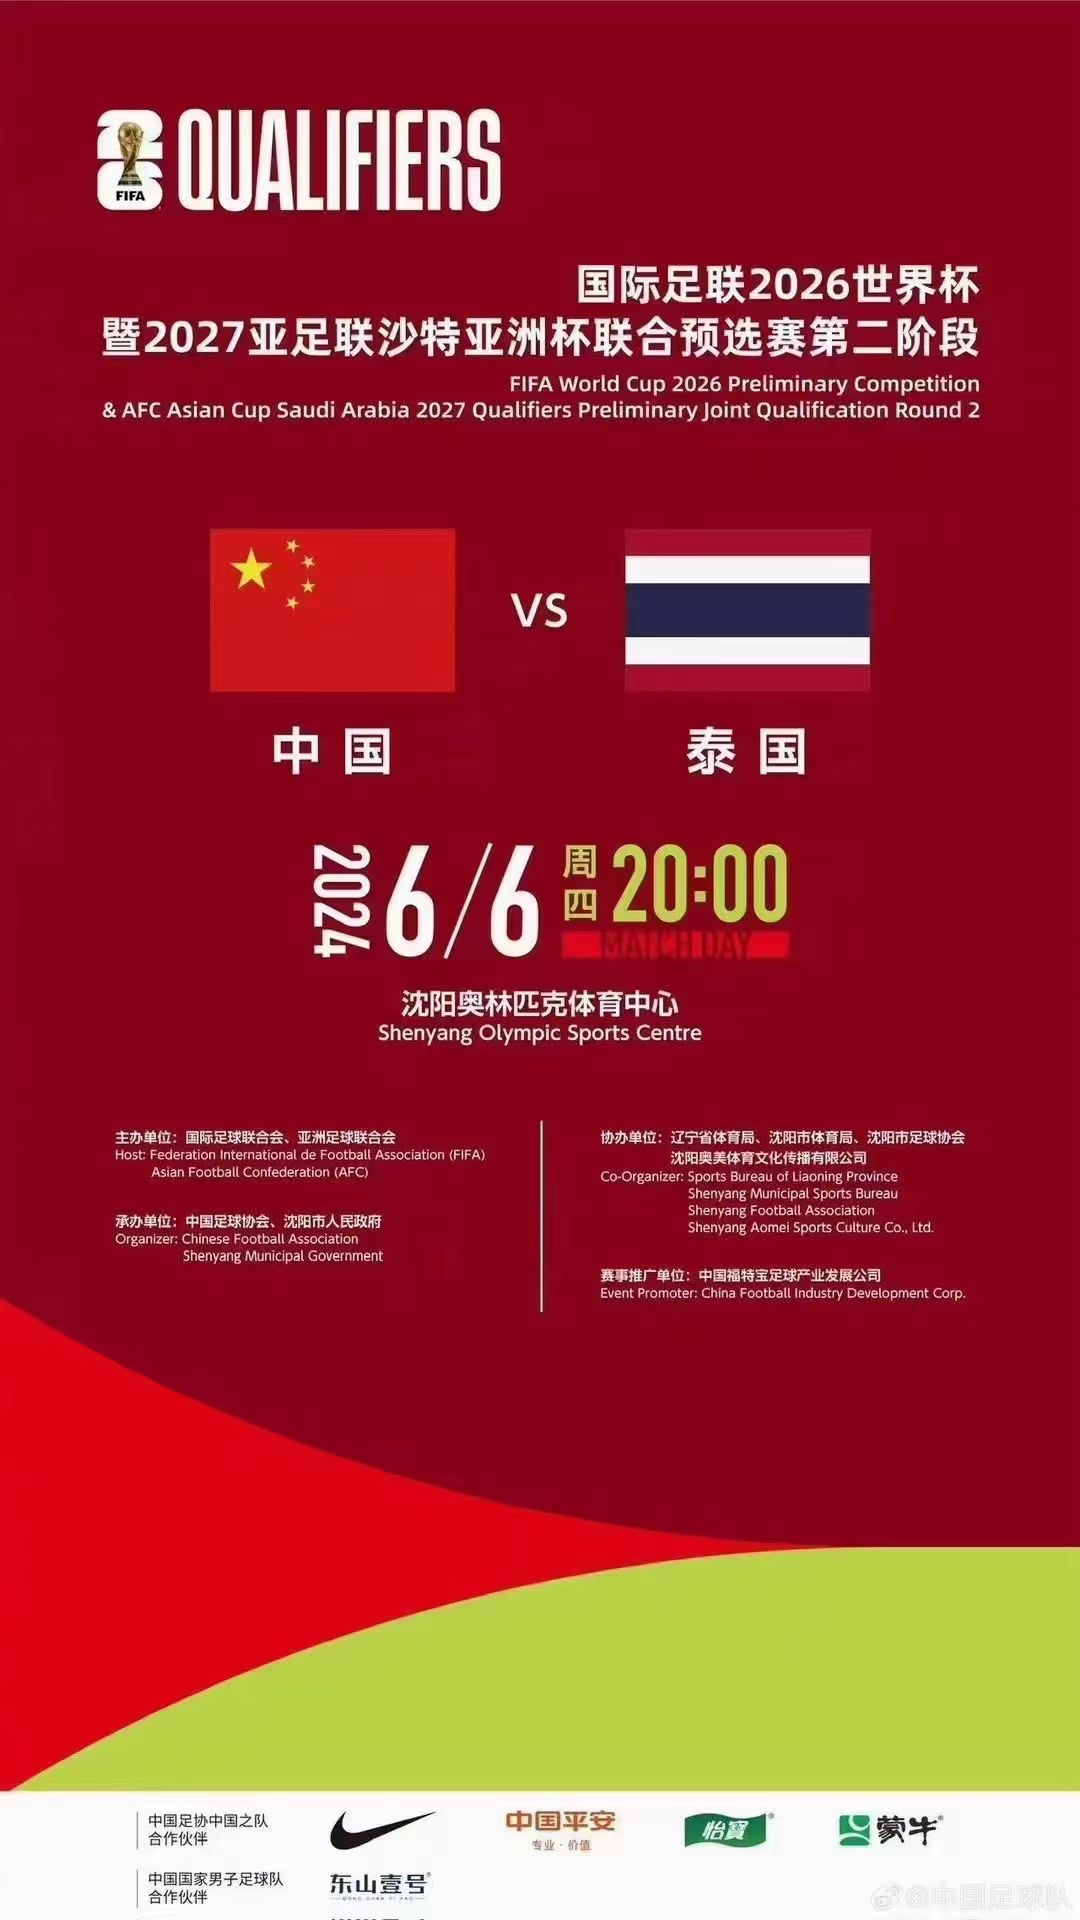 [沈阳]2026世界杯足球赛亚洲区预选赛 男足世预赛中国队比赛 中国vs泰国